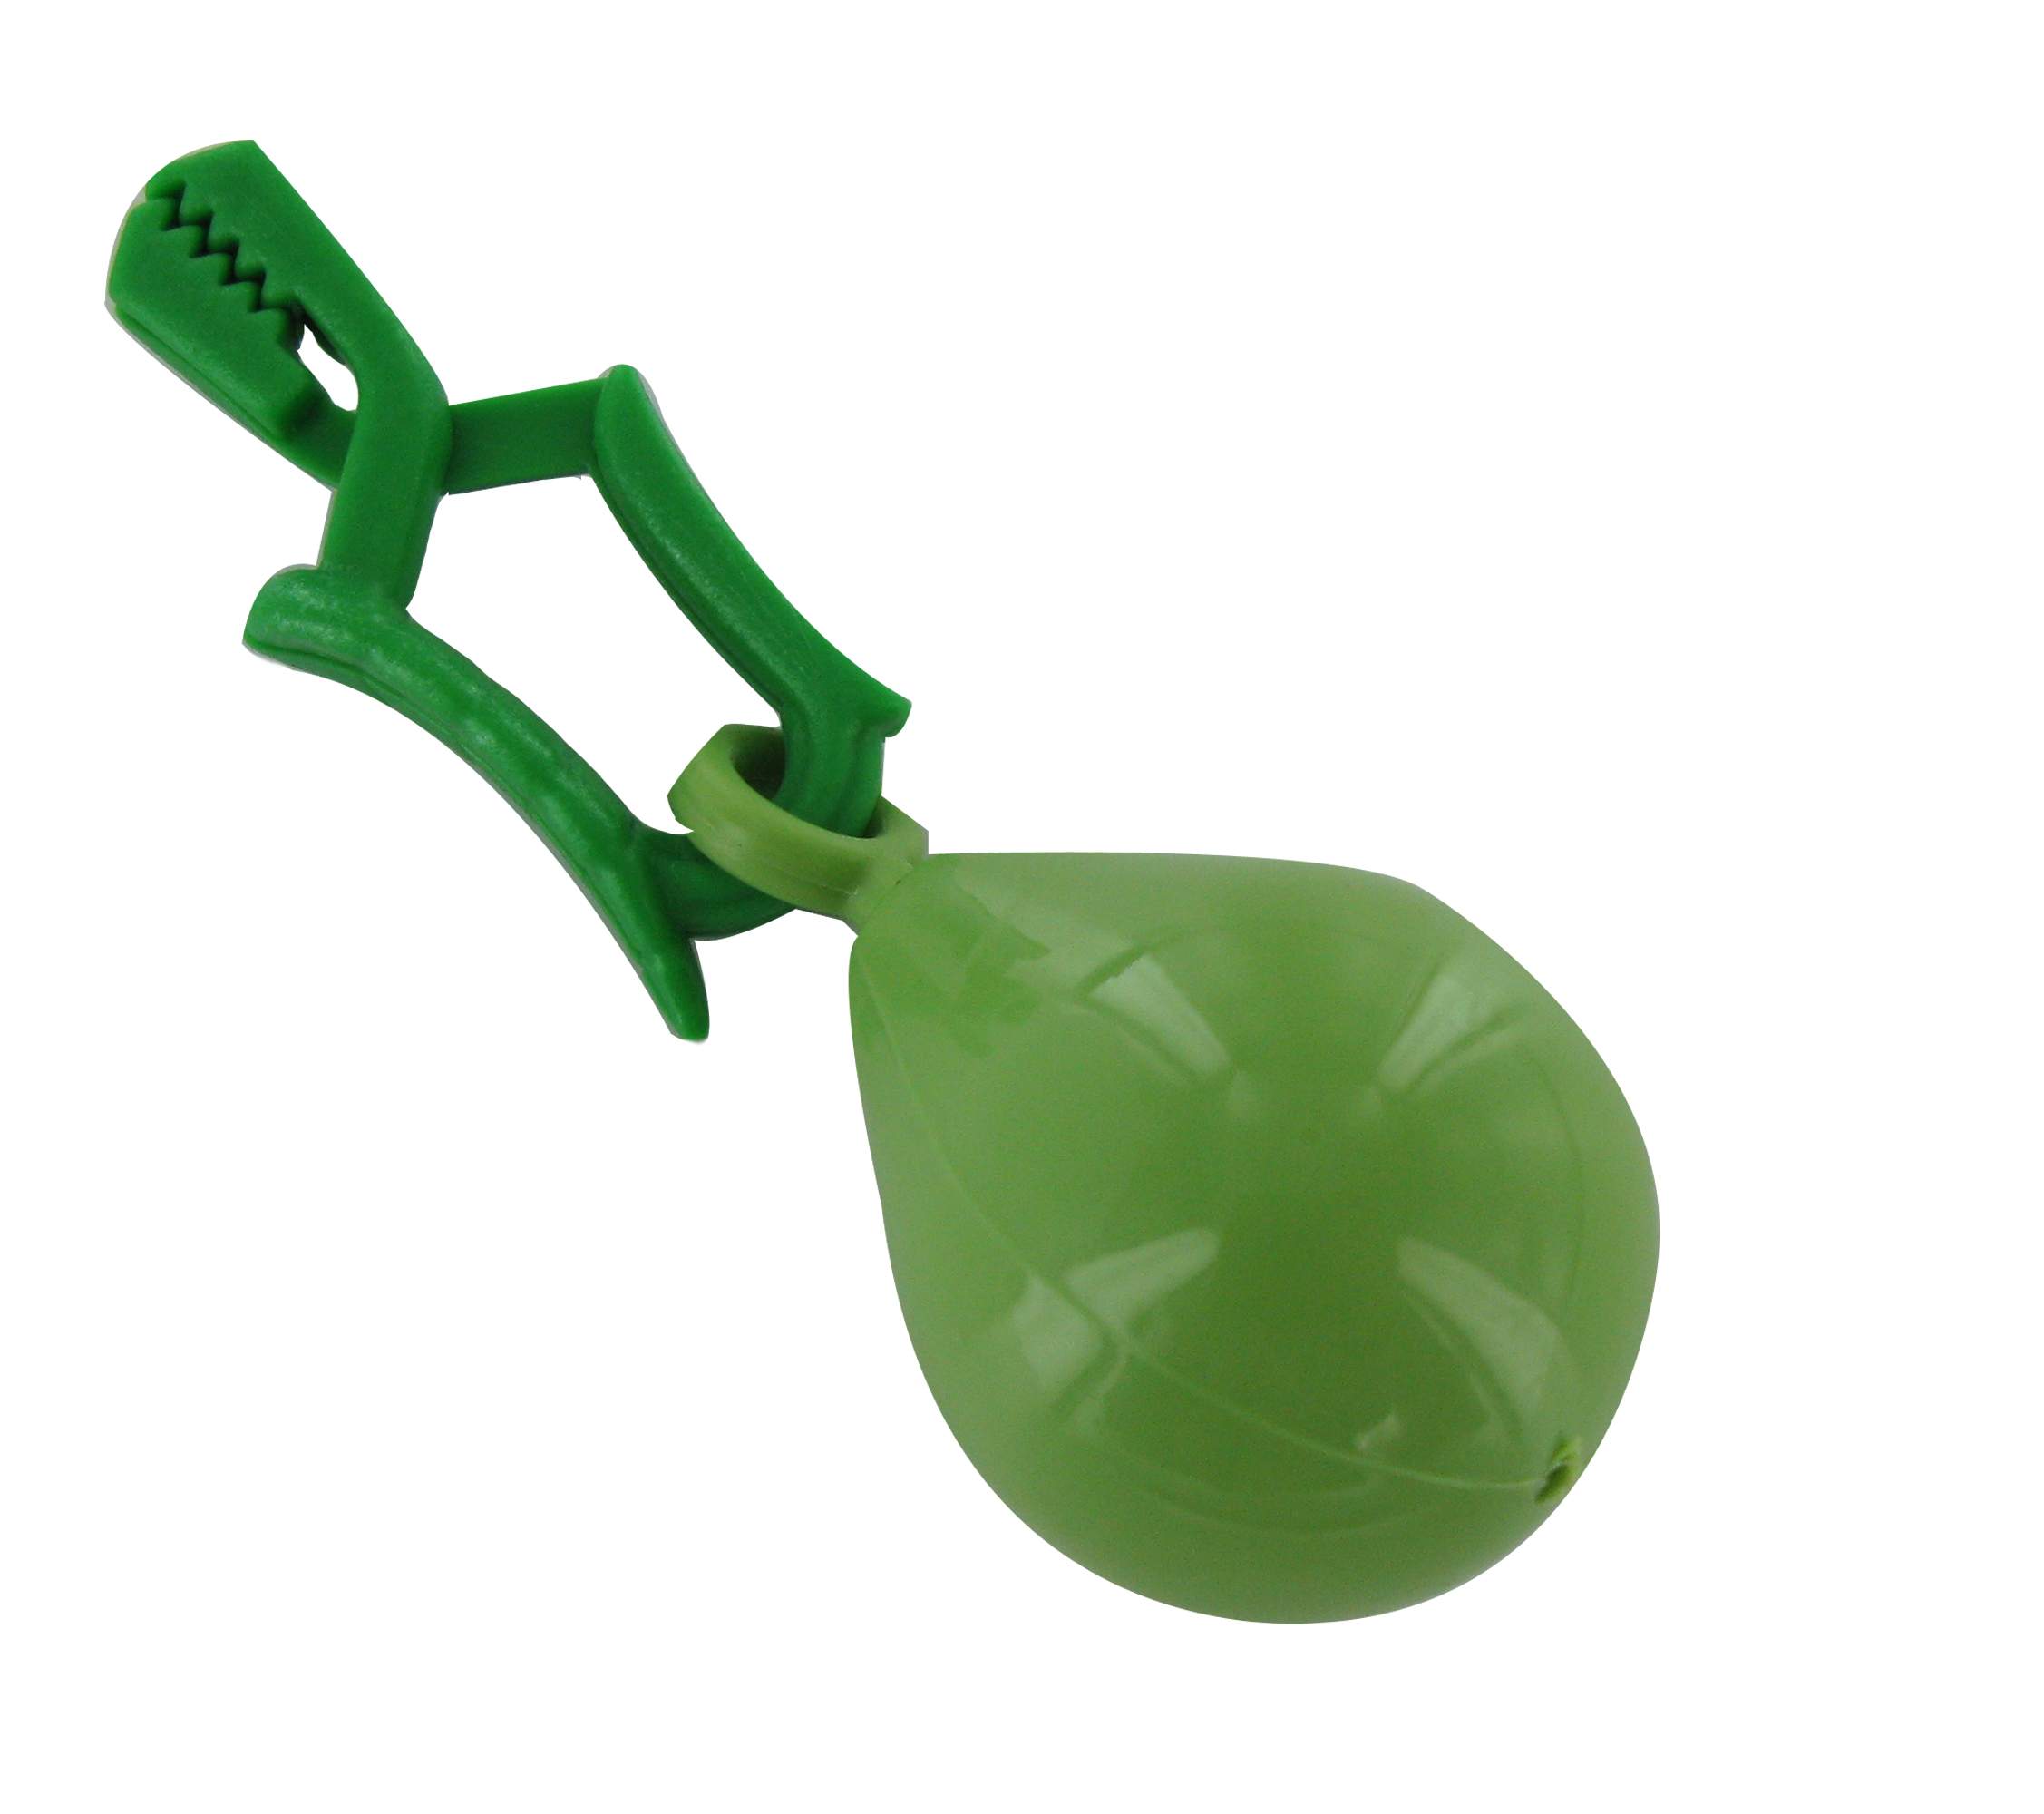 Peso per tovaglia a forma di pera, H.75.5mm, D.26mm, plastica verde, 2 pezzi.